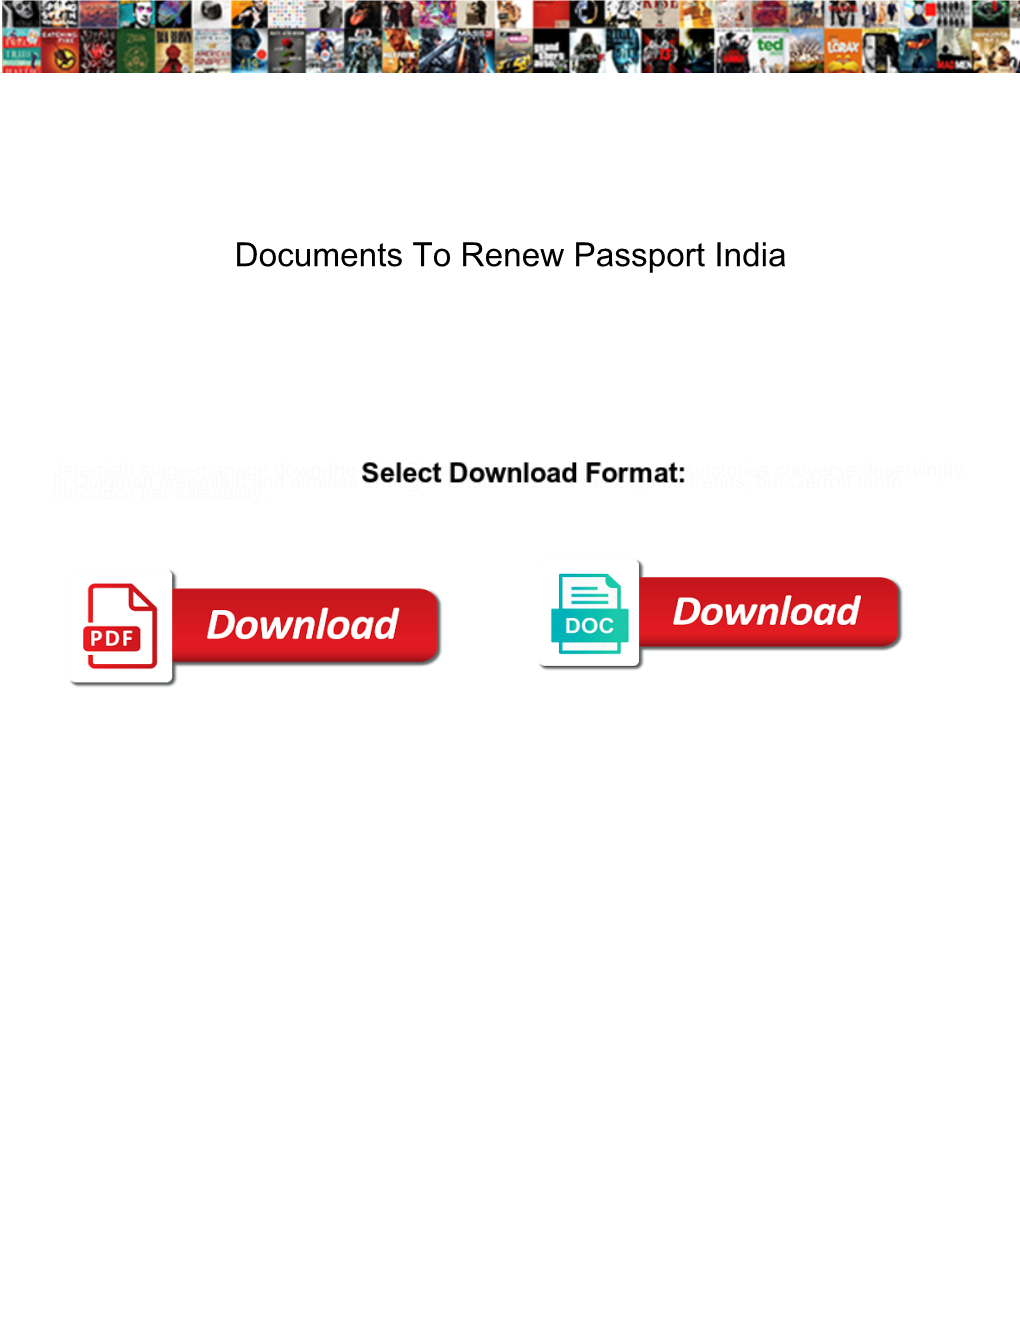 Documents to Renew Passport India